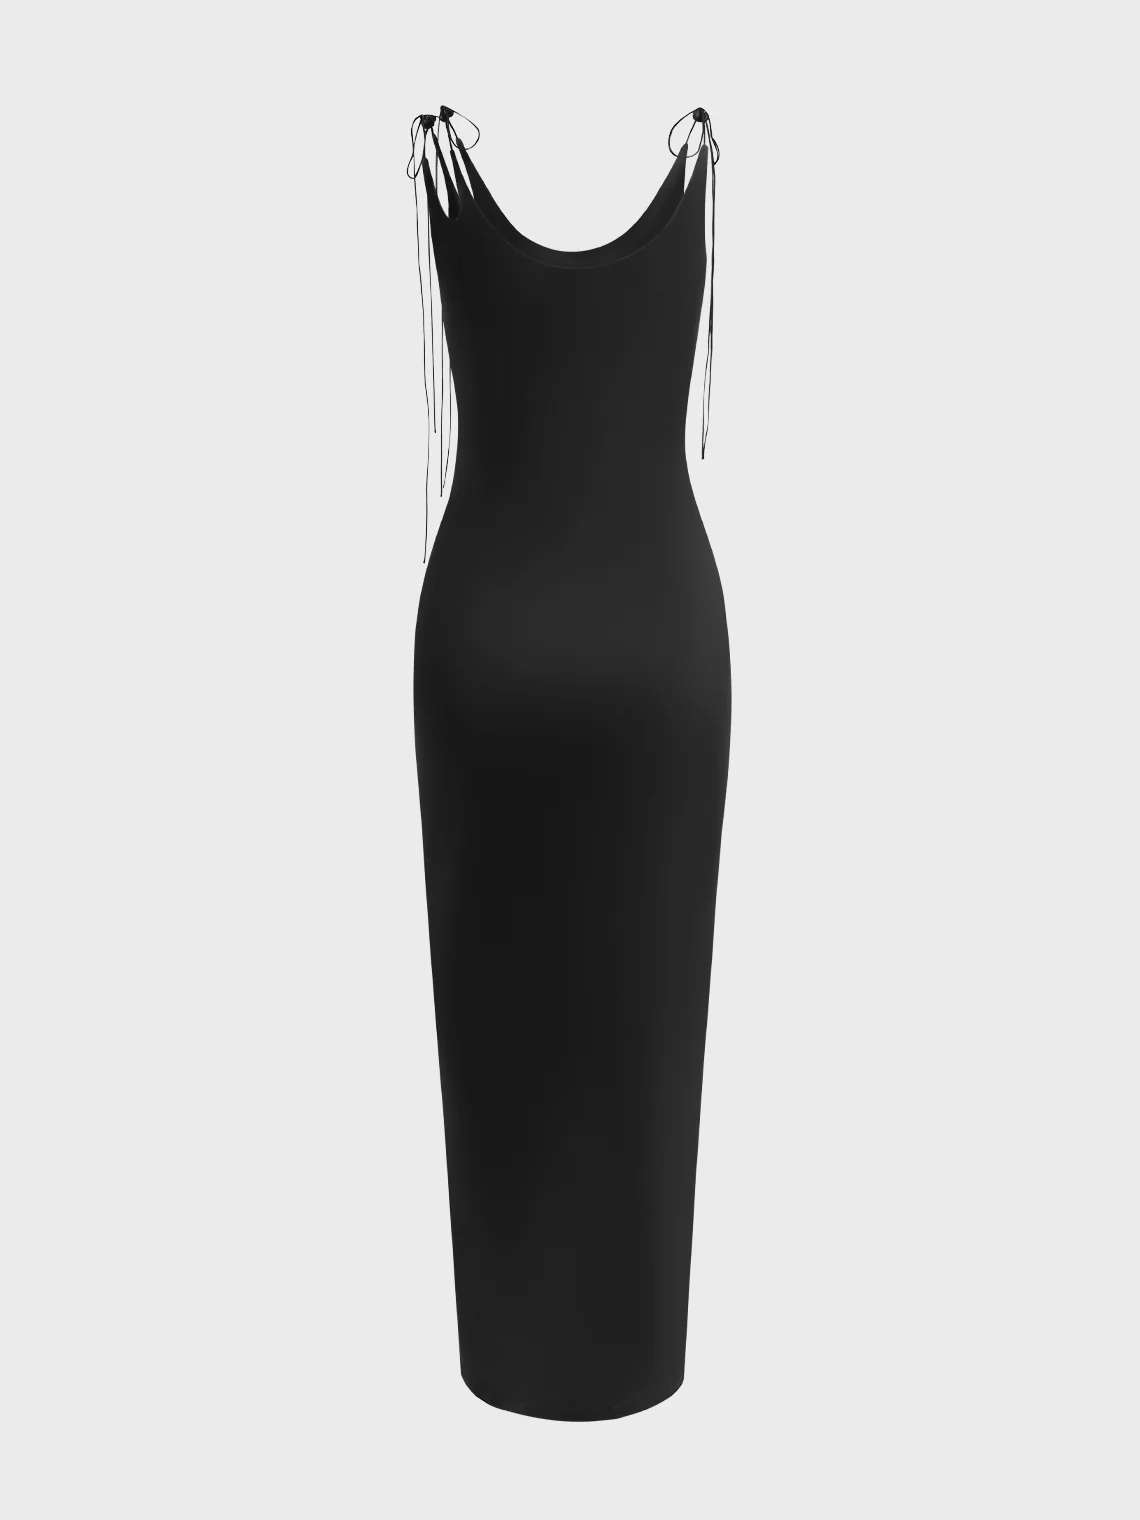 【Final Sale】Edgy Blue Body print Asymmetrical design Dress Midi Dress